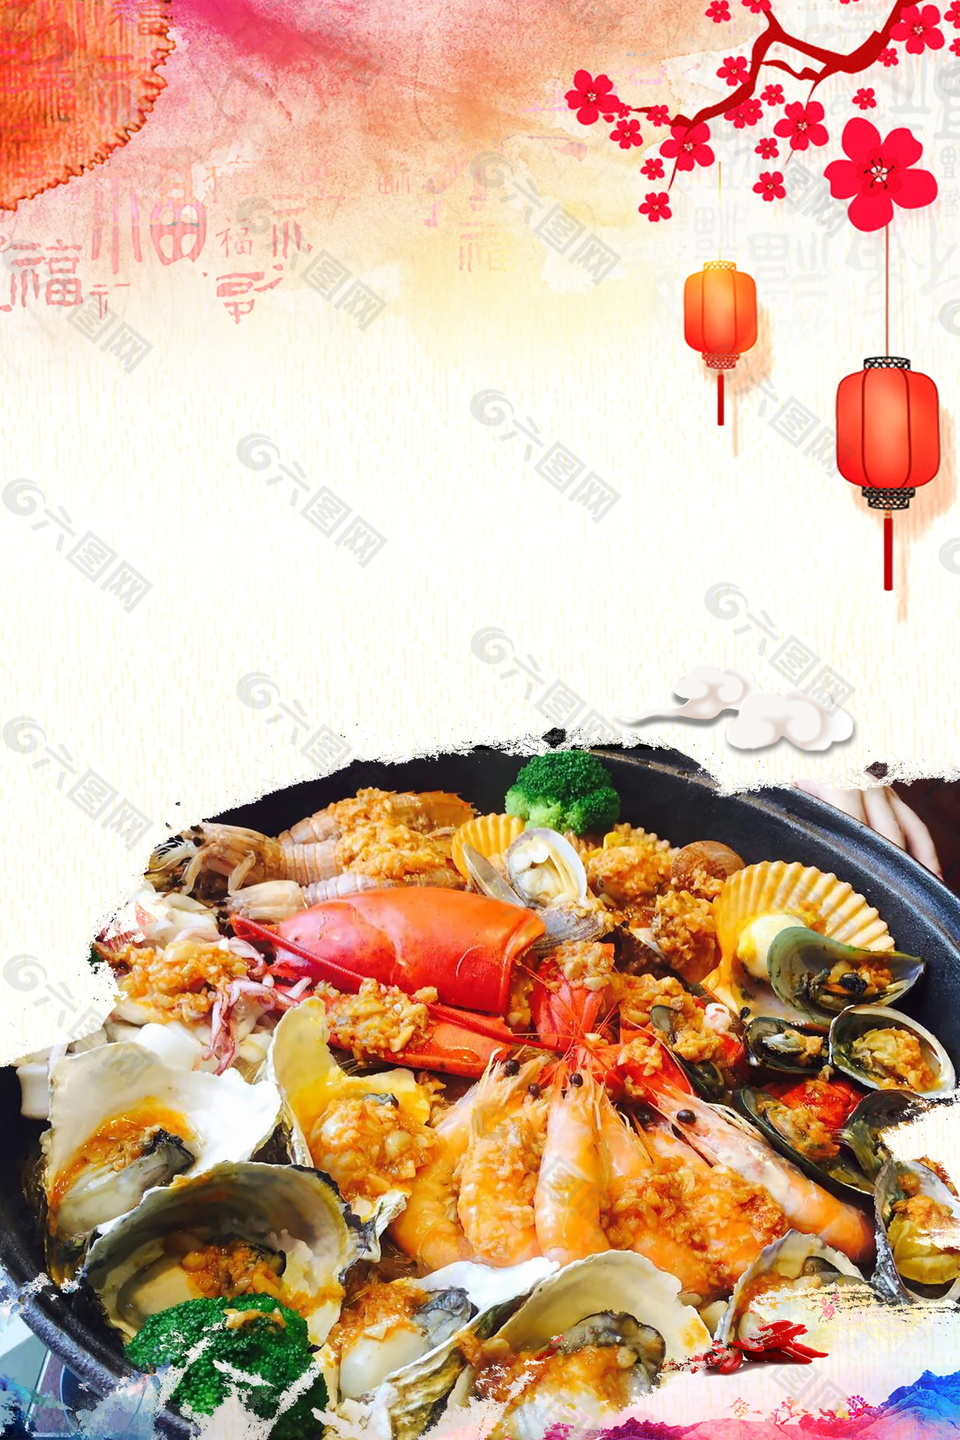 中国风福字梅花灯笼海鲜吃货节背景素材